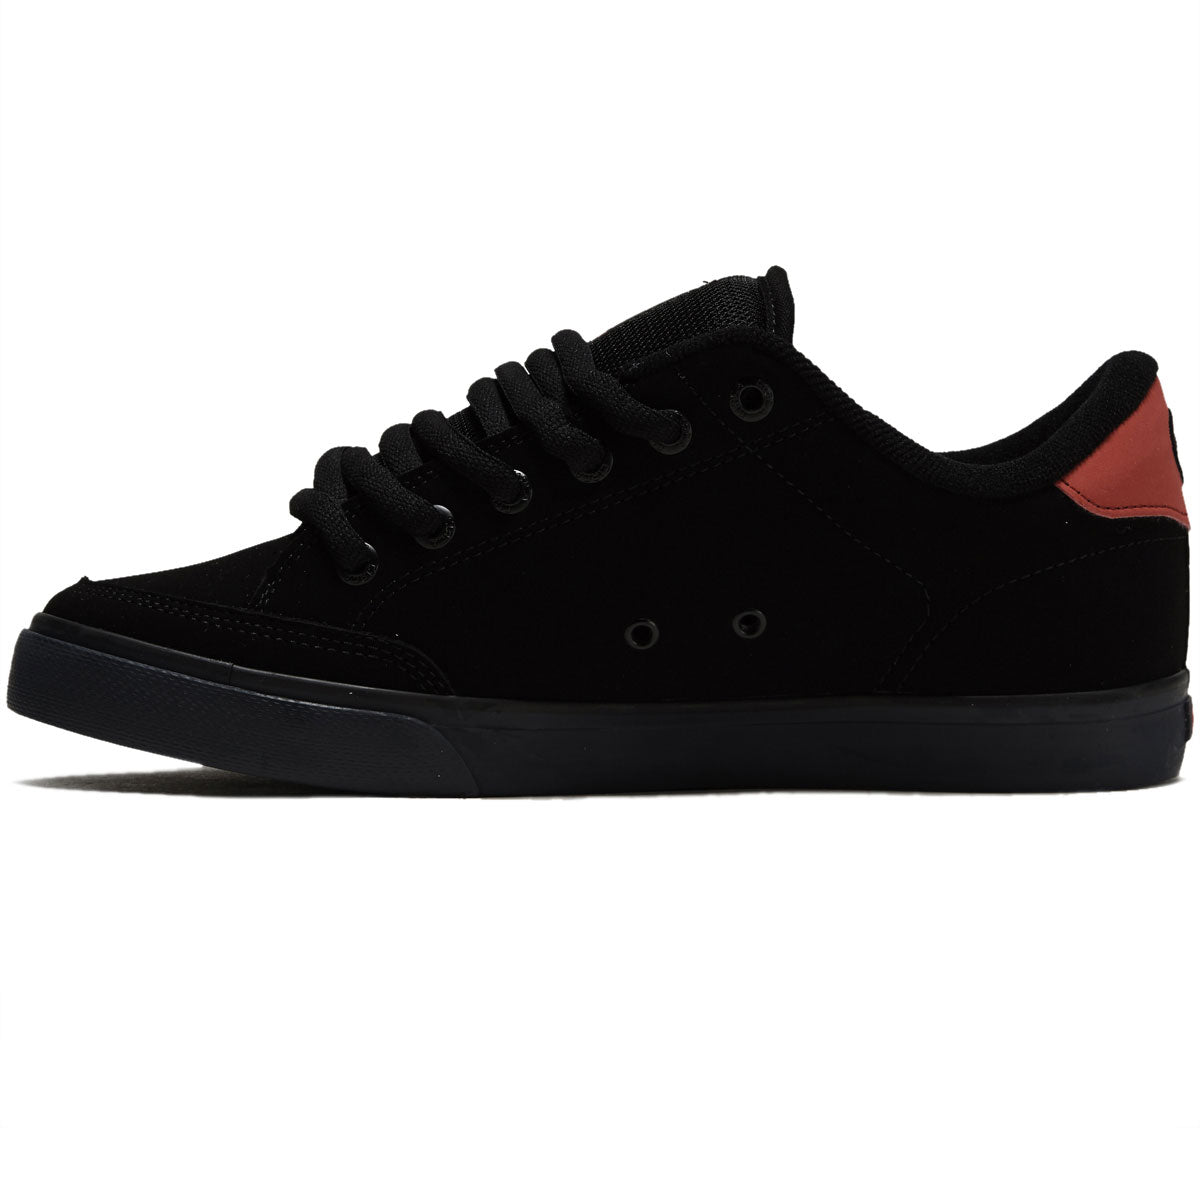 C1rca AL 50 Pro Shoes - Black/Scarlet image 2